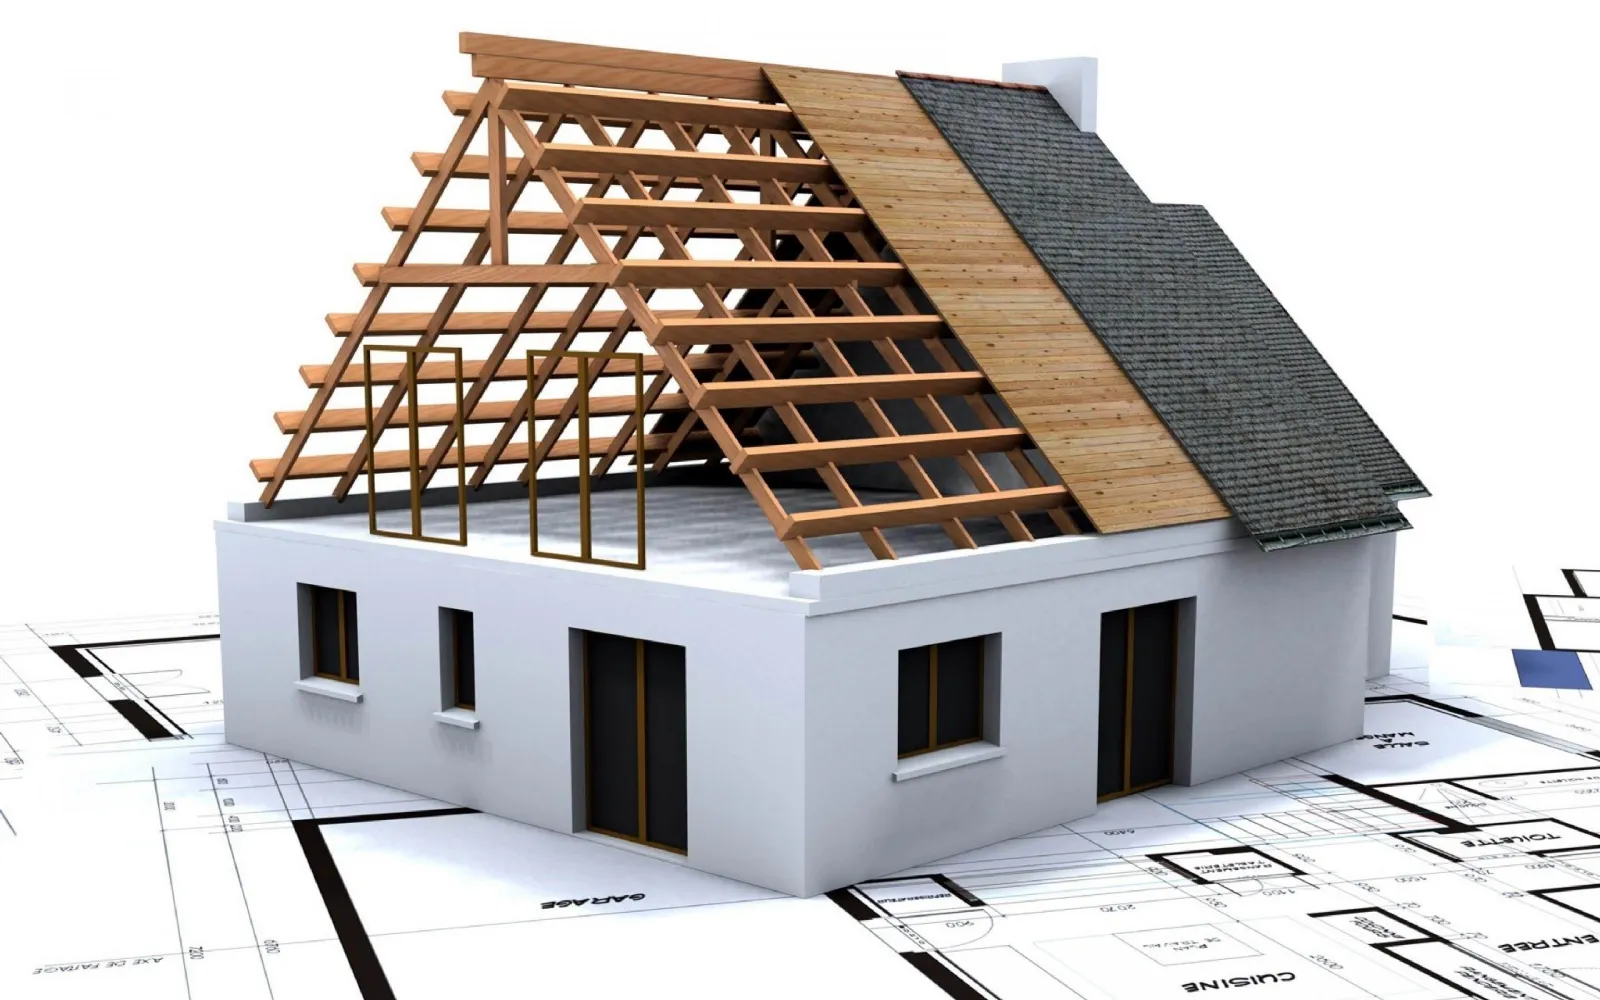 Programma arredamento interni idee per la casa for Software progettazione interni 3d